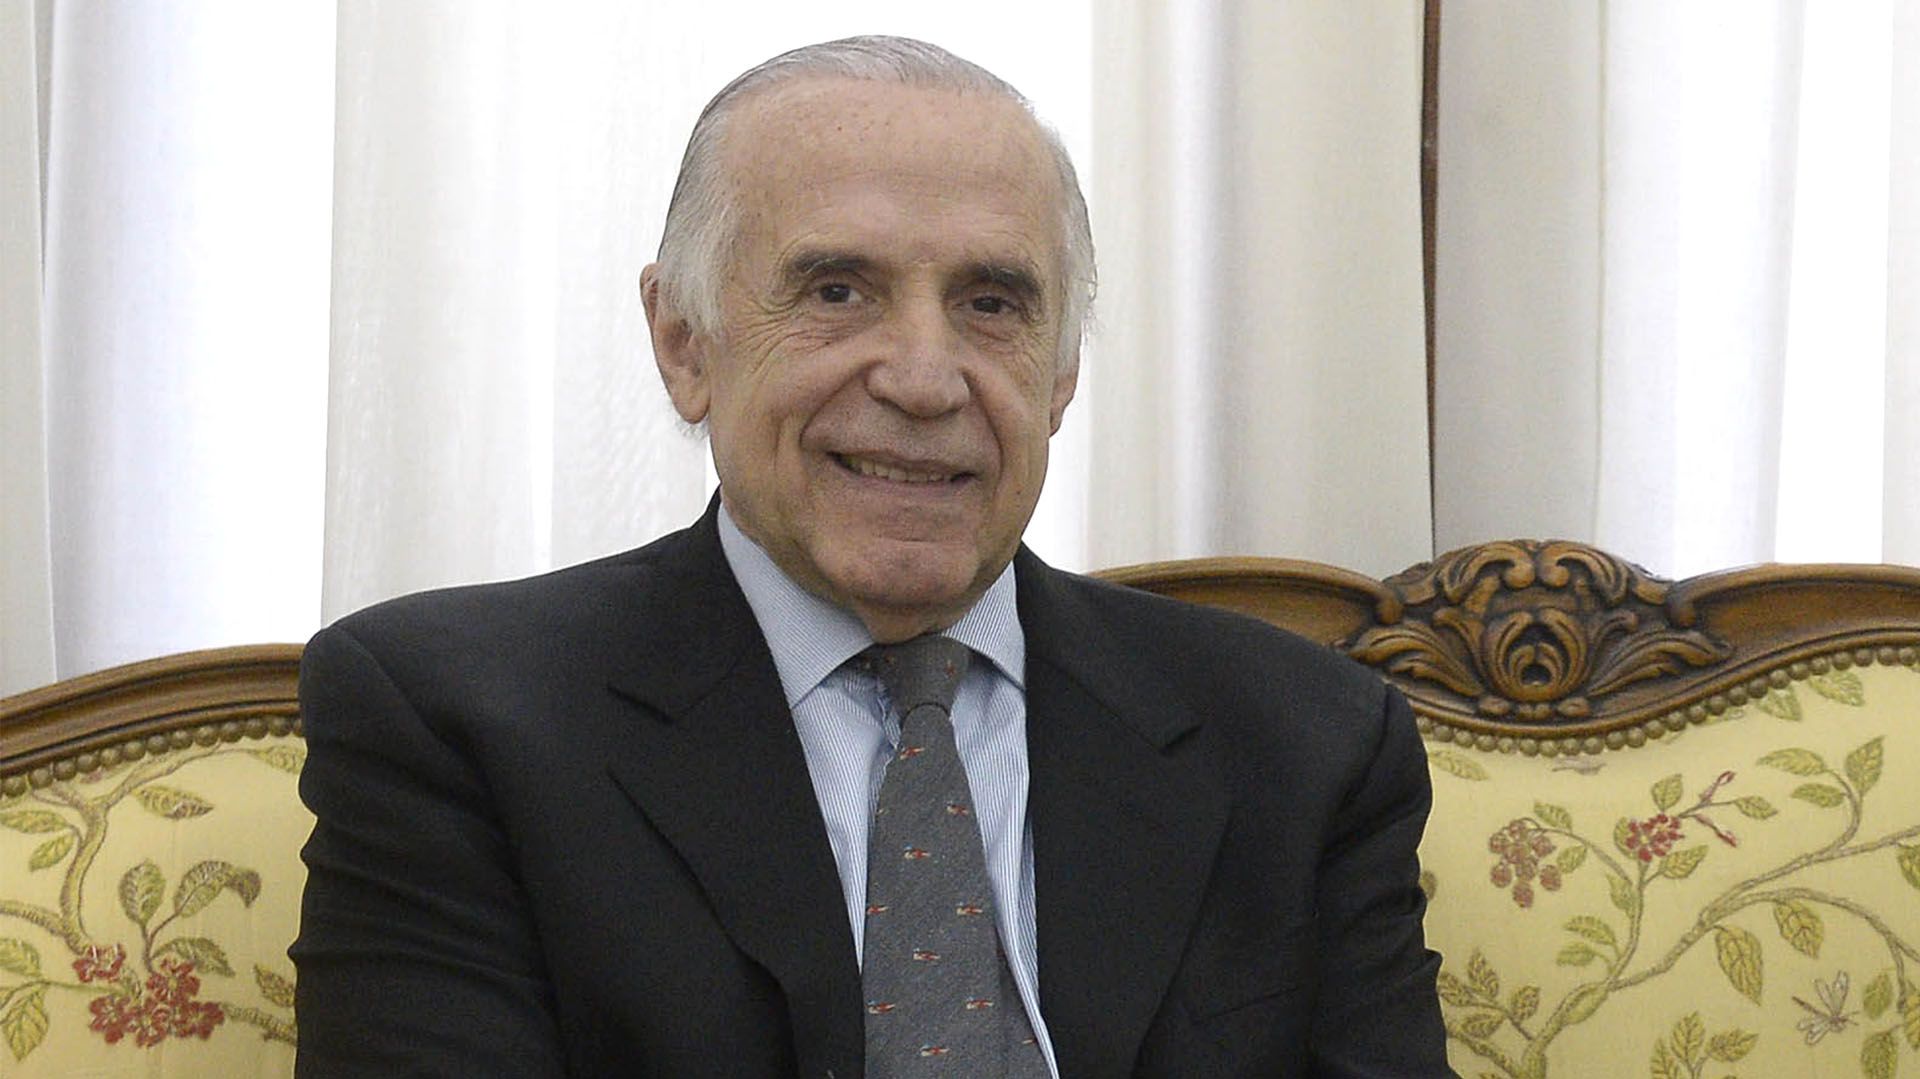 Passaglia fue ministro de Salud durante la gestión de Felipe Solá en la provincia de Buenos Aires